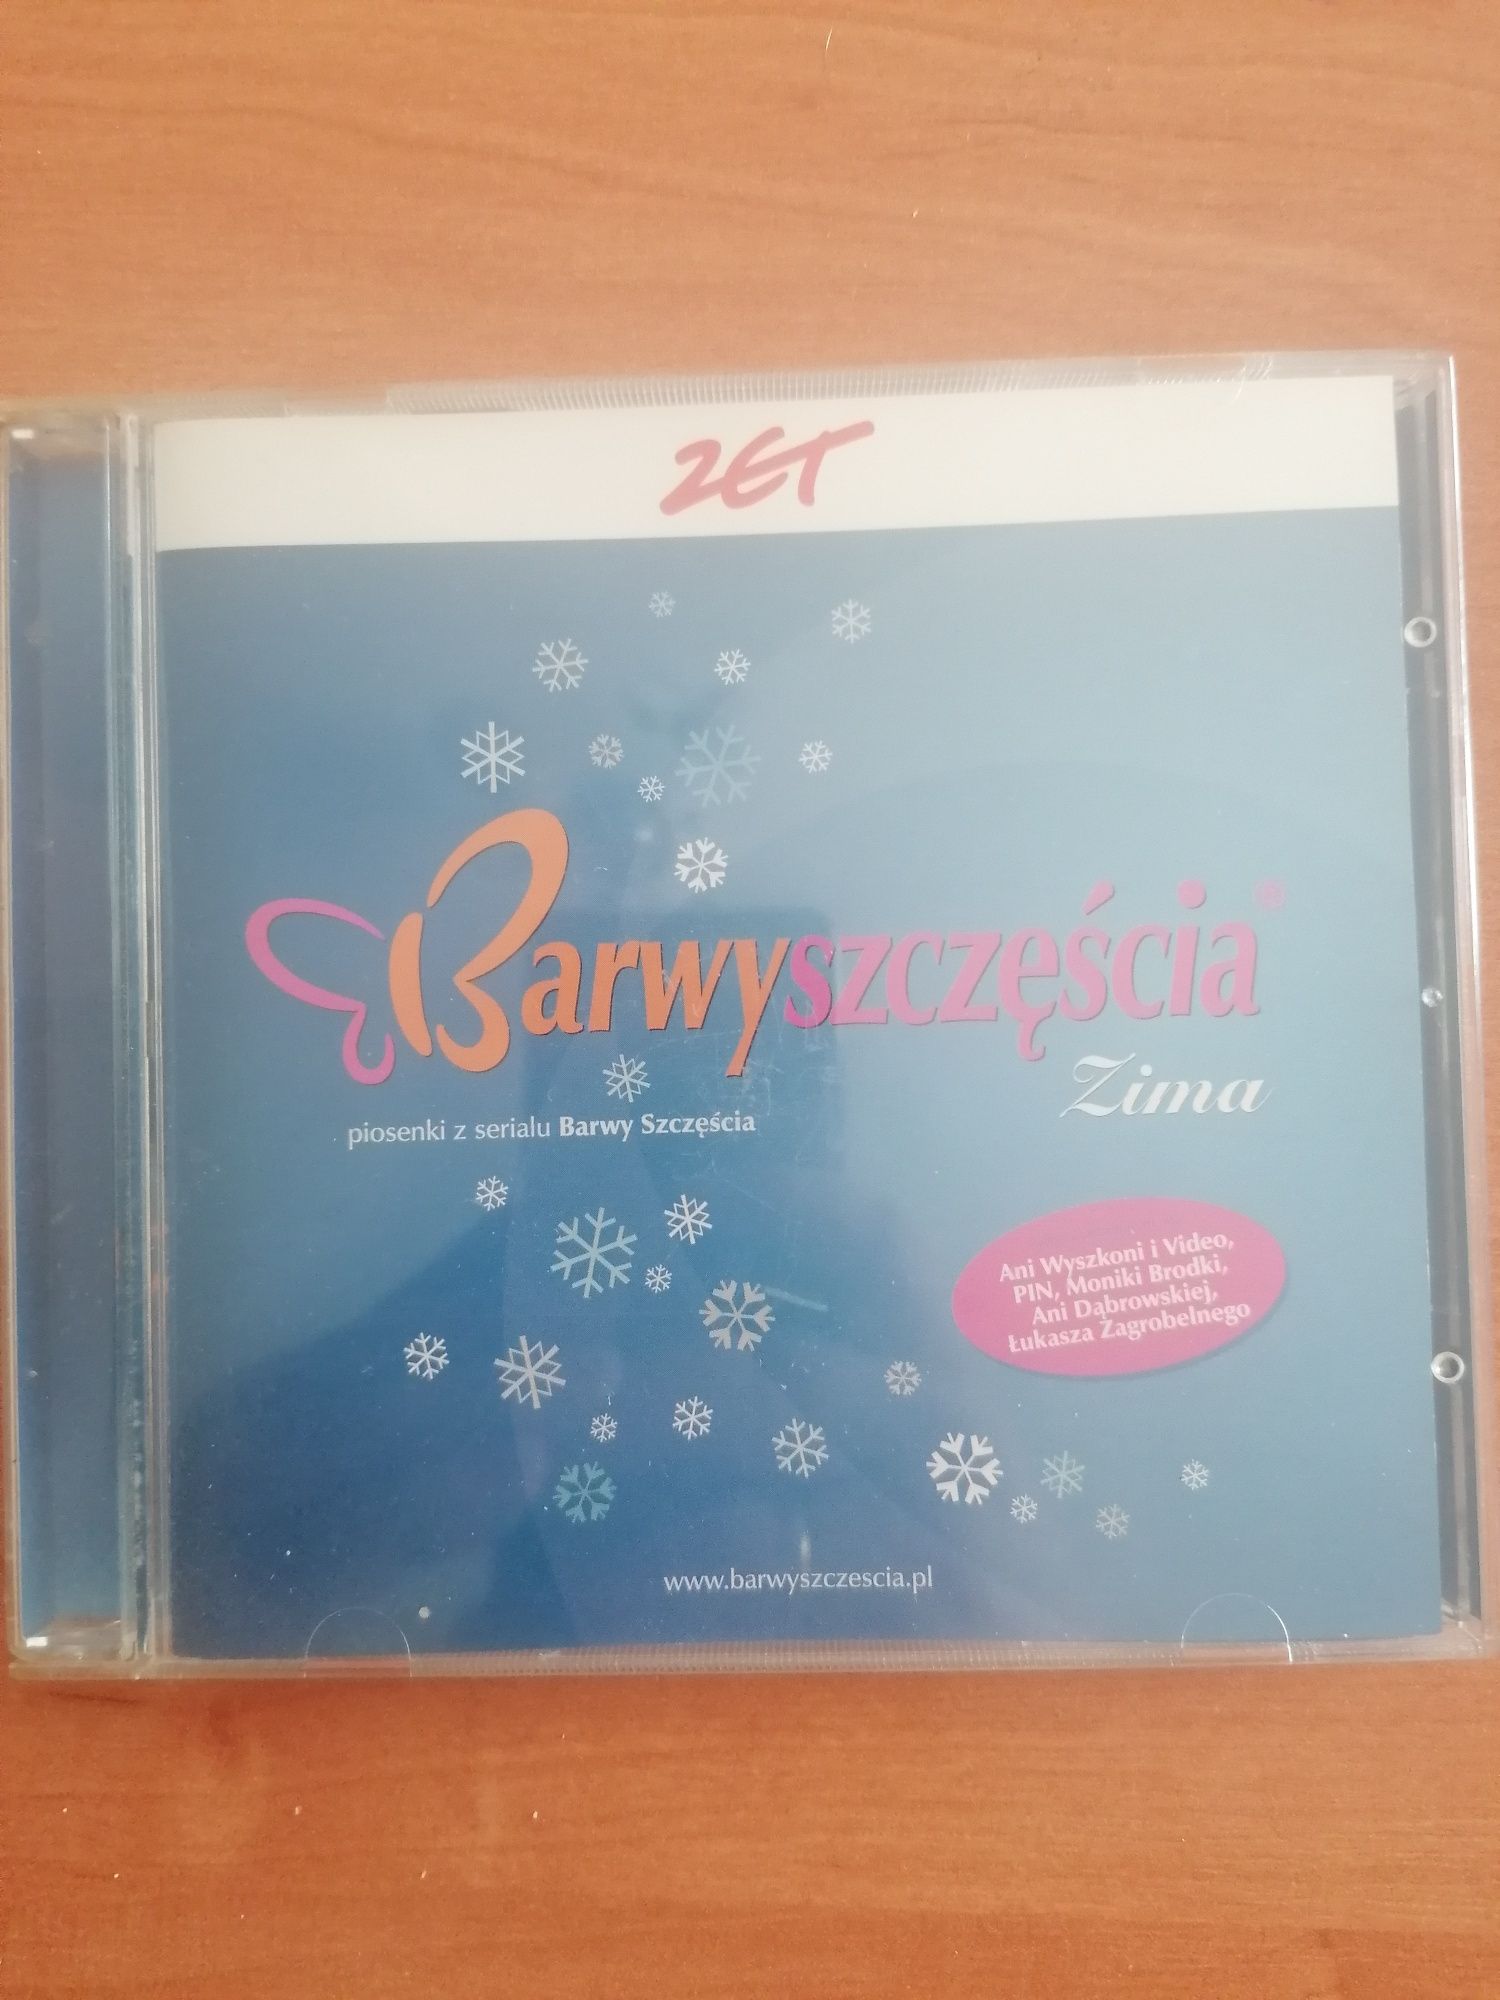 Barwy szczęścia - zima (składanka CD)